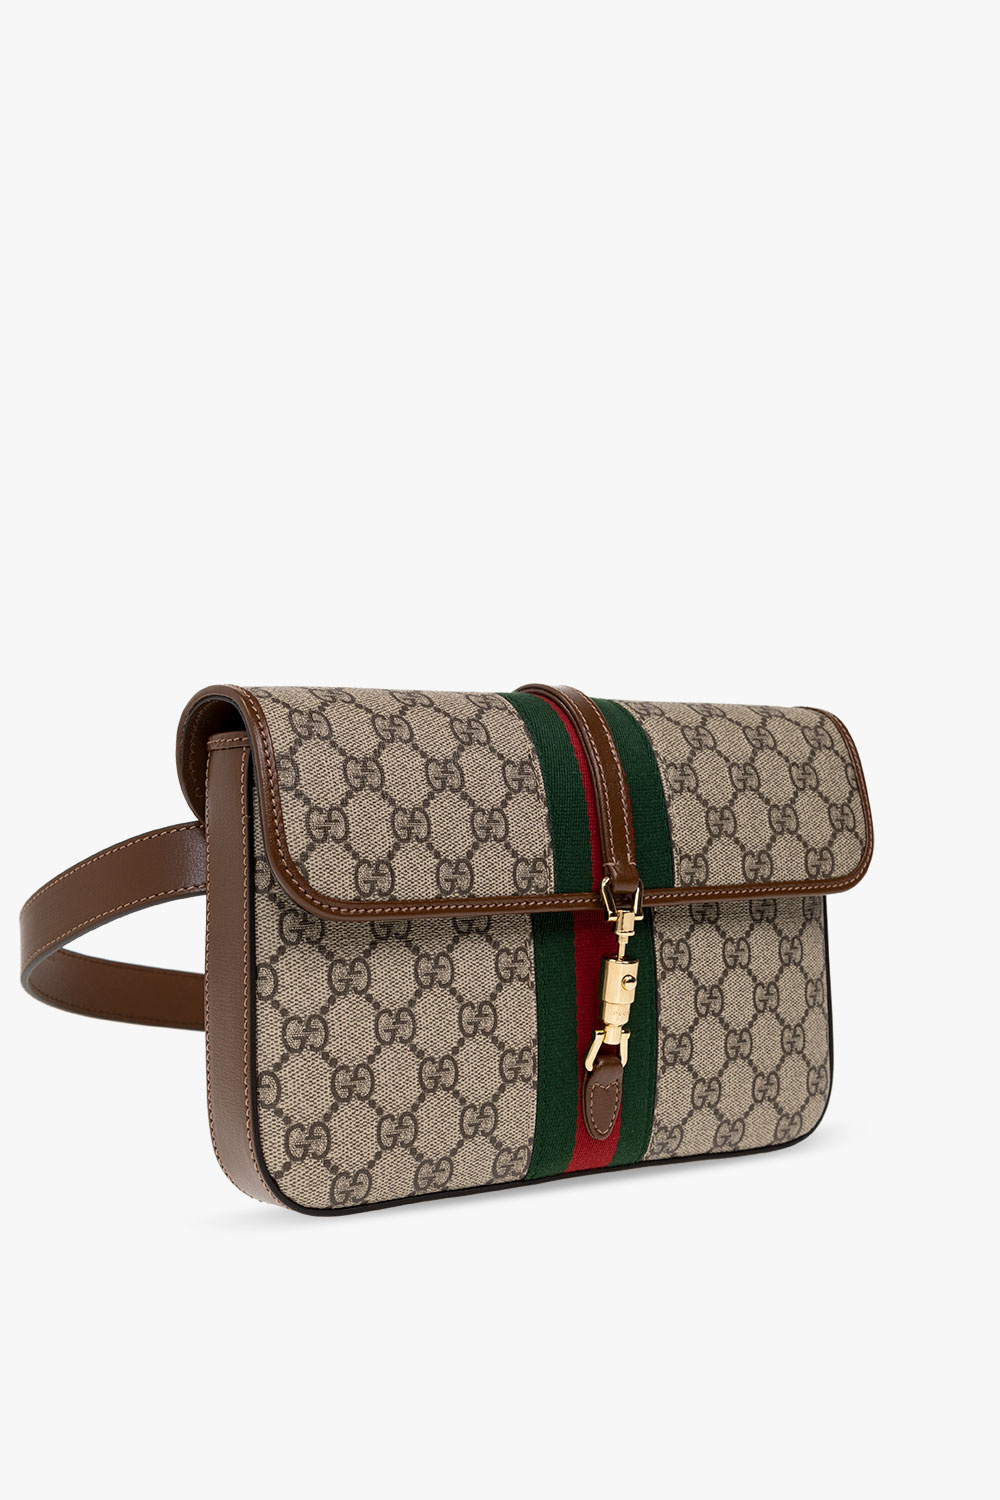 Gucci Jackie 1961 Belt Bag in Brown